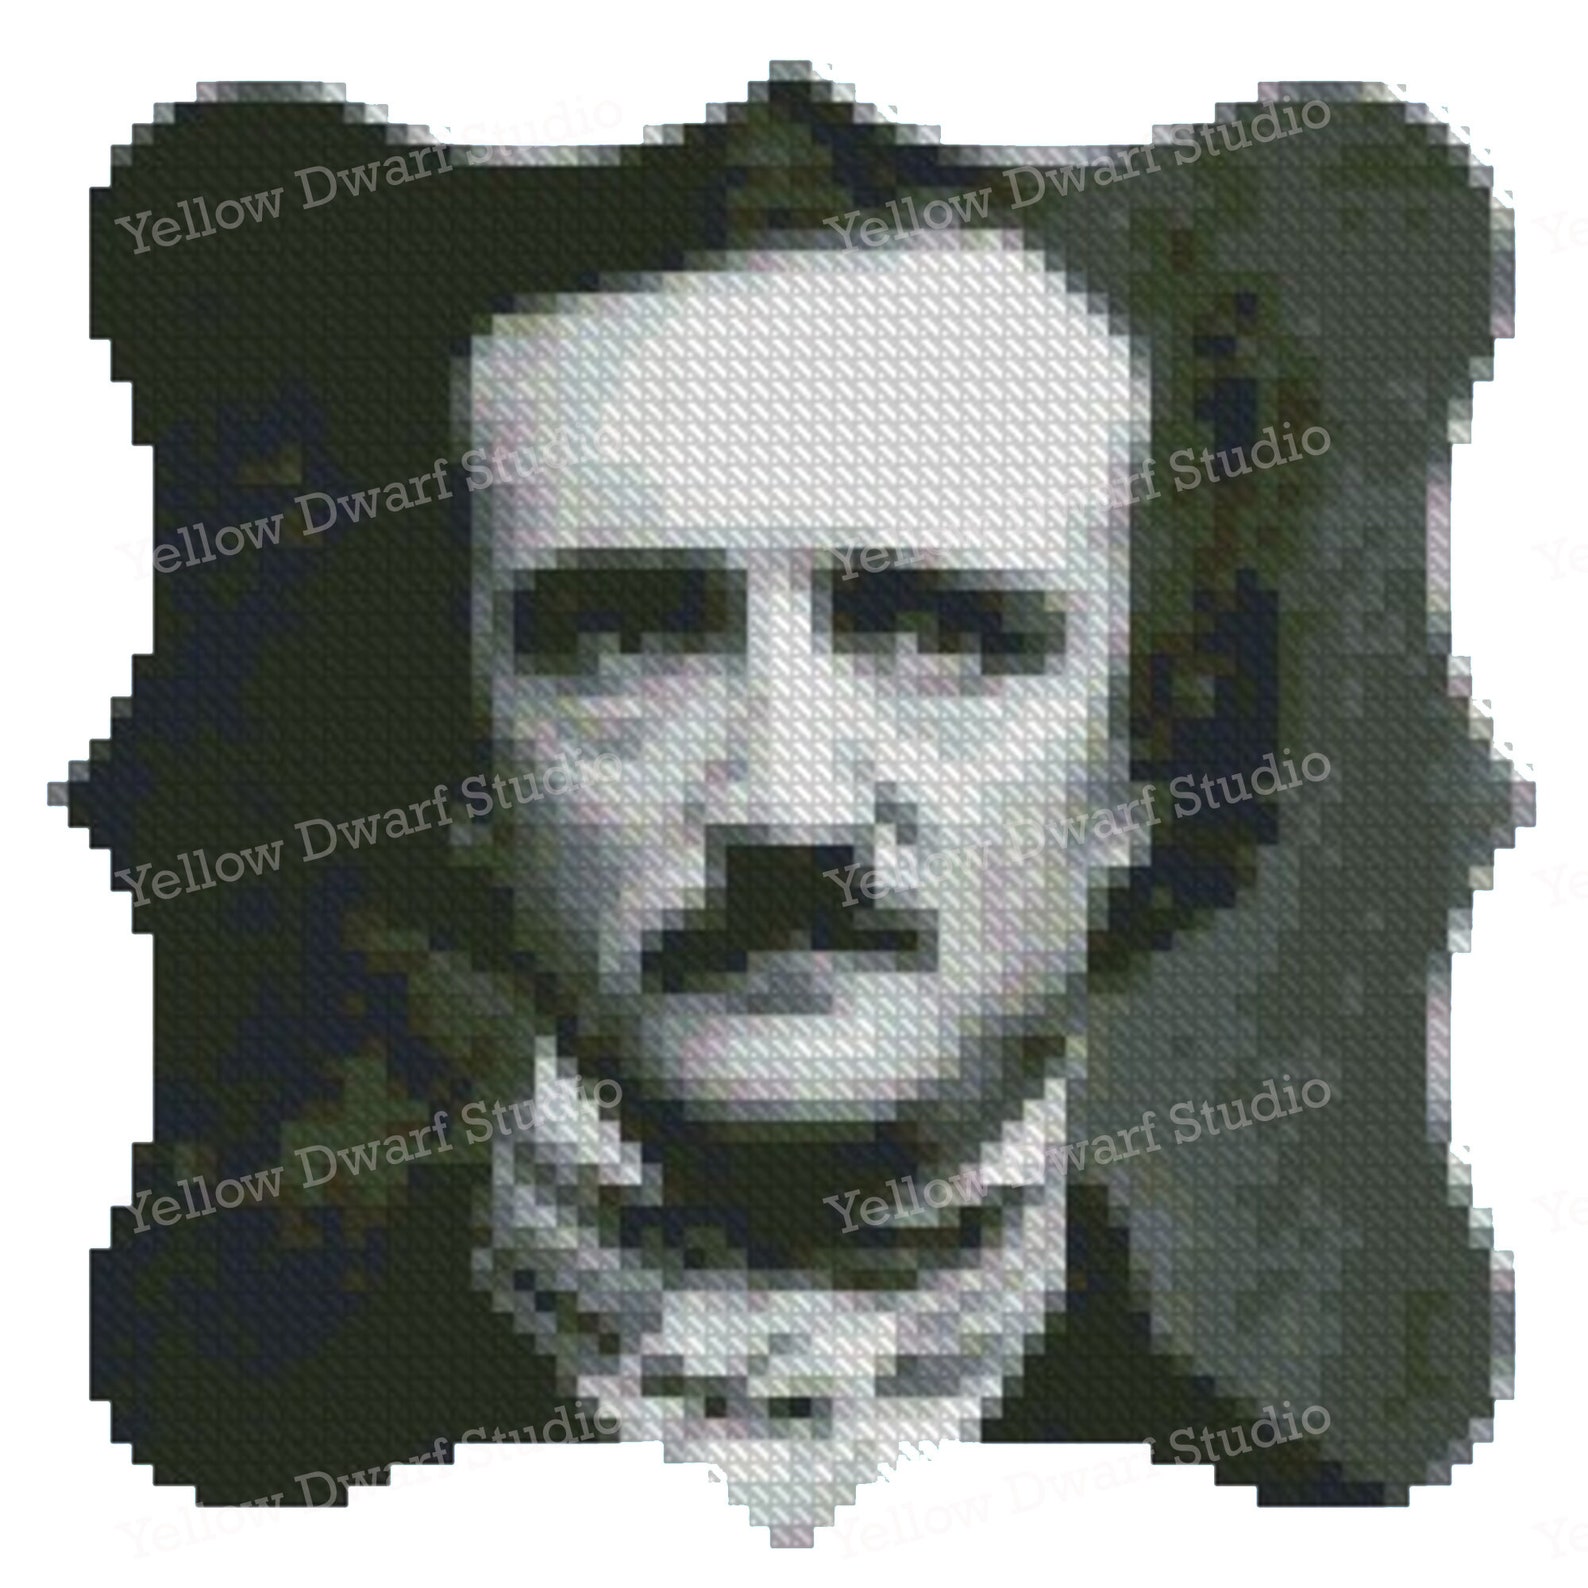 Edgar Allan Poe cross stitch pattern monochrome pattern in | Etsy